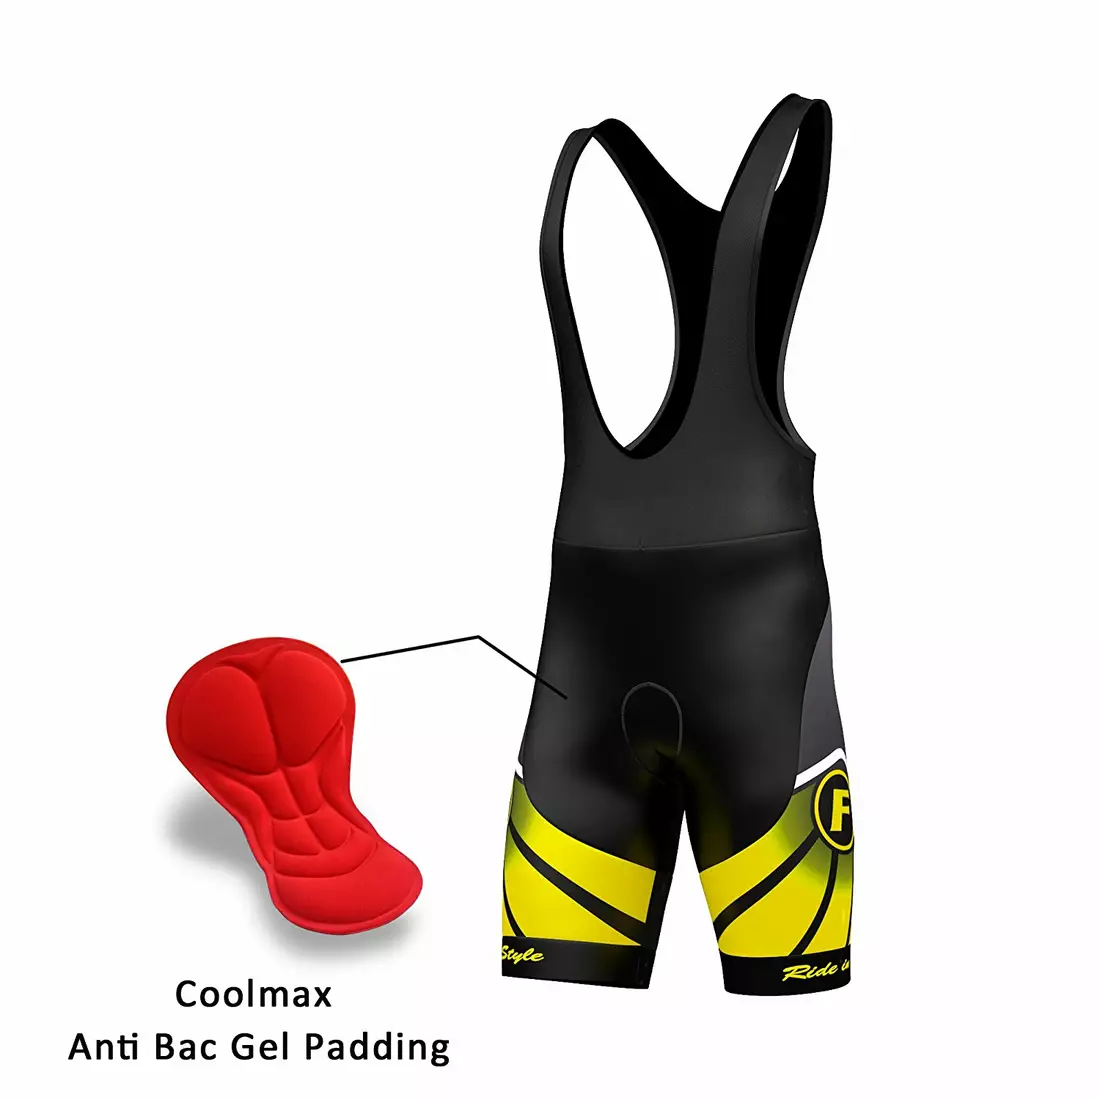 FDX 1020 summer cycling set jersey + bib shorts black and yellow